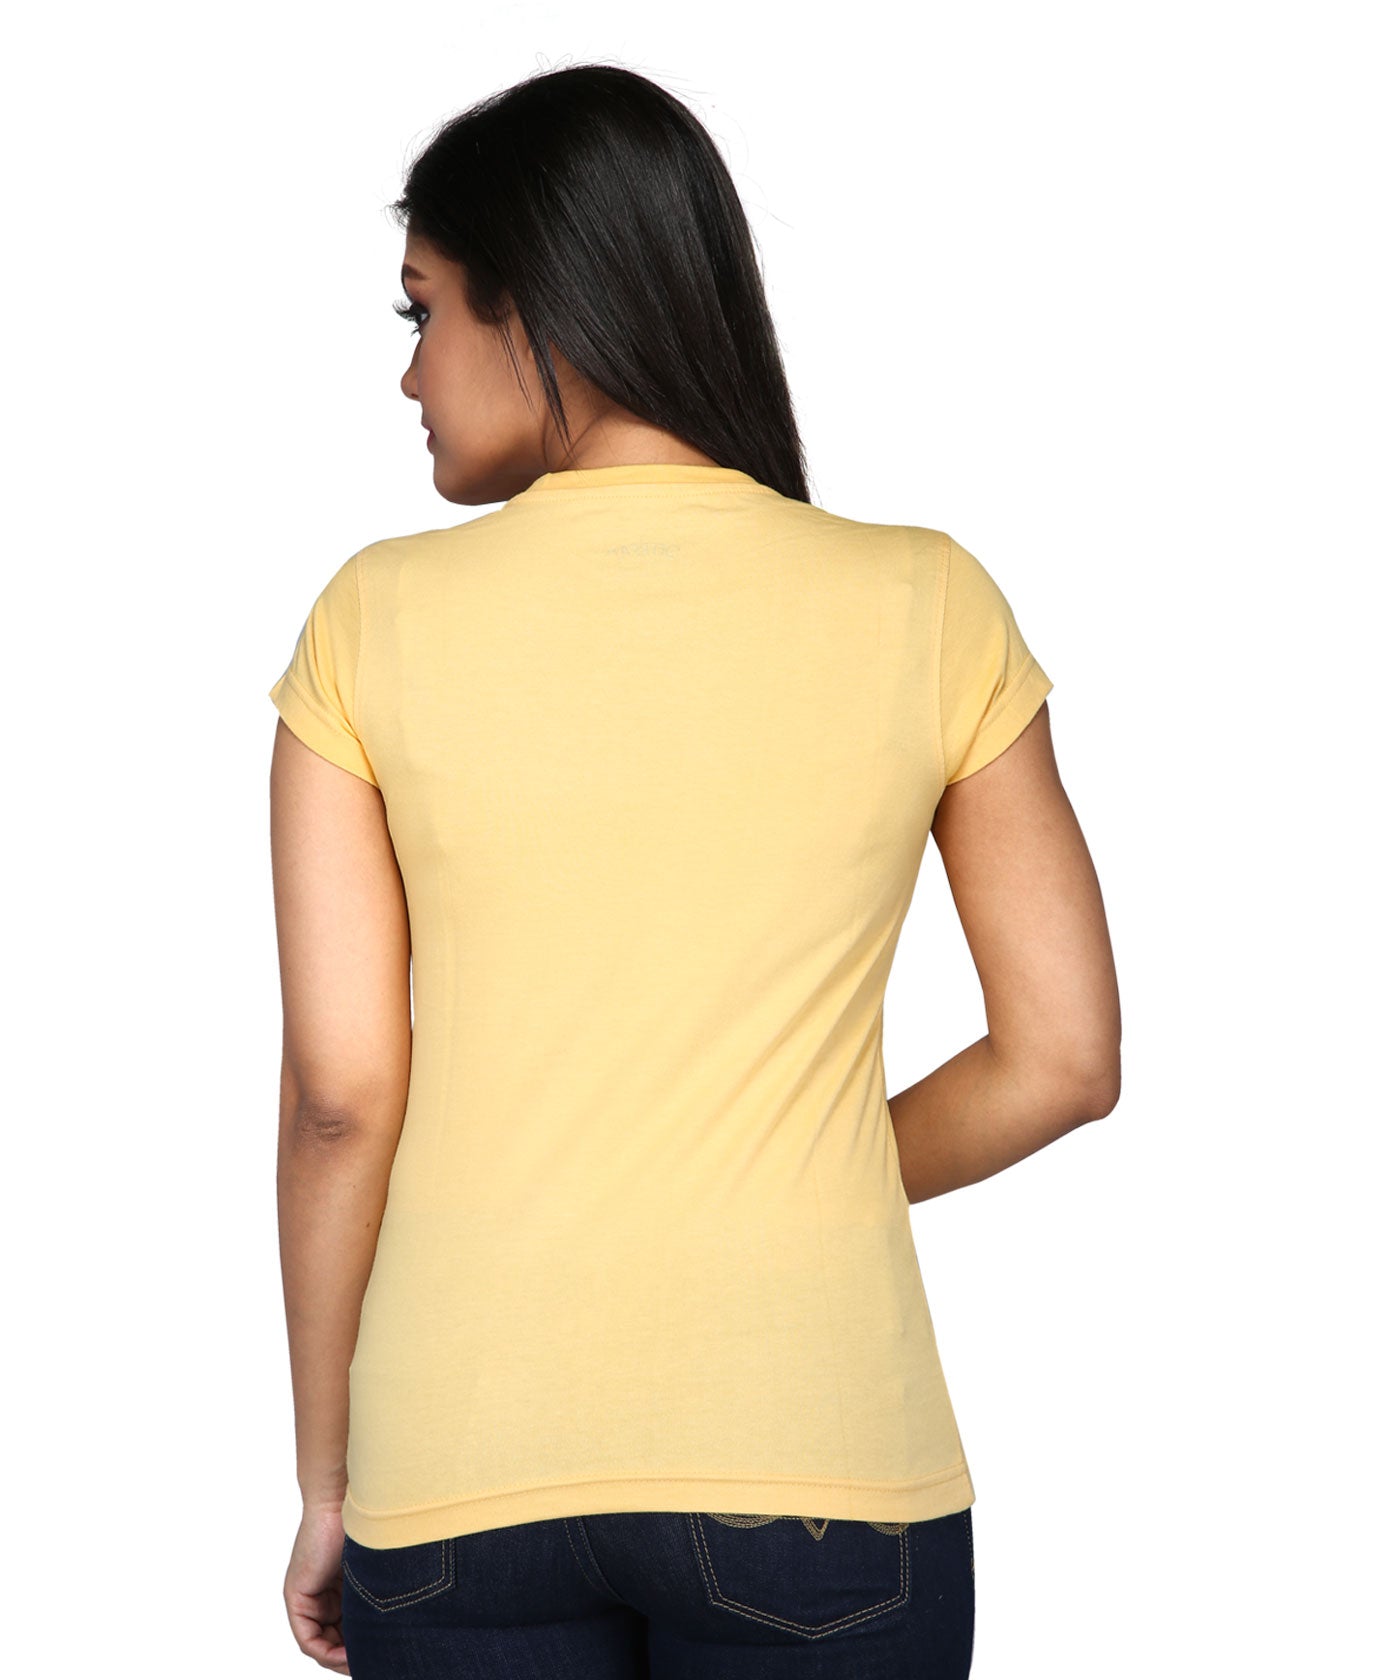 Yoga To Feel Good - Premium Round Neck Cotton Tees for Women - Golden Yellow